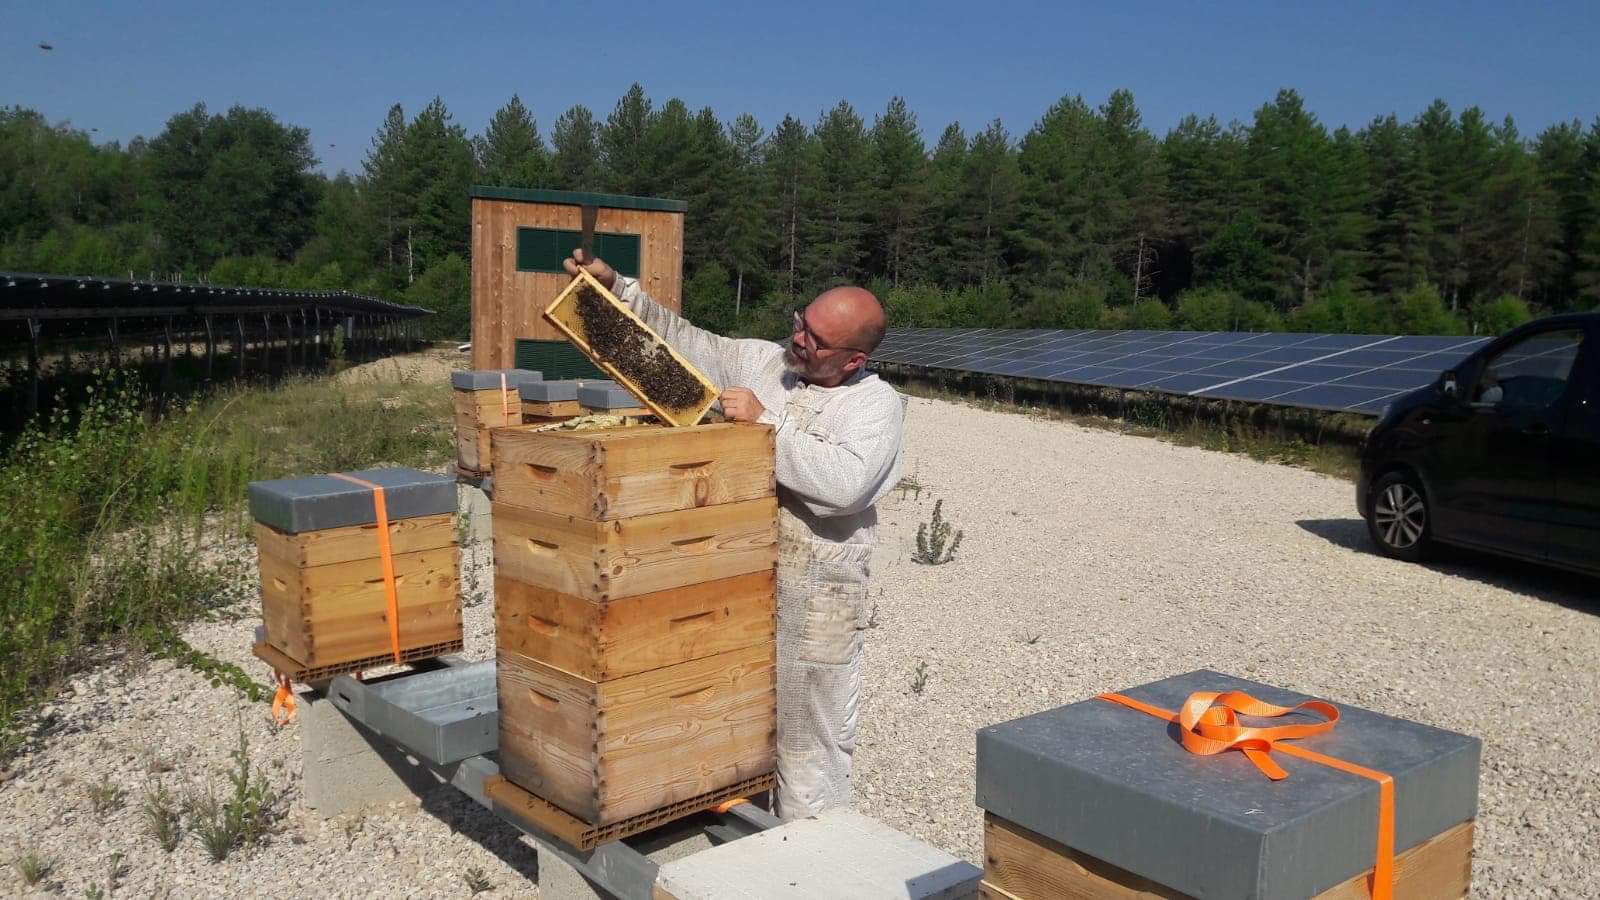 Michaël Preteseille le dirigeant du rucher de la Dame Blanche installe les ruches dans un parc de panneaux photovoltaïques d'APEX énergies ou d'EREA technologie